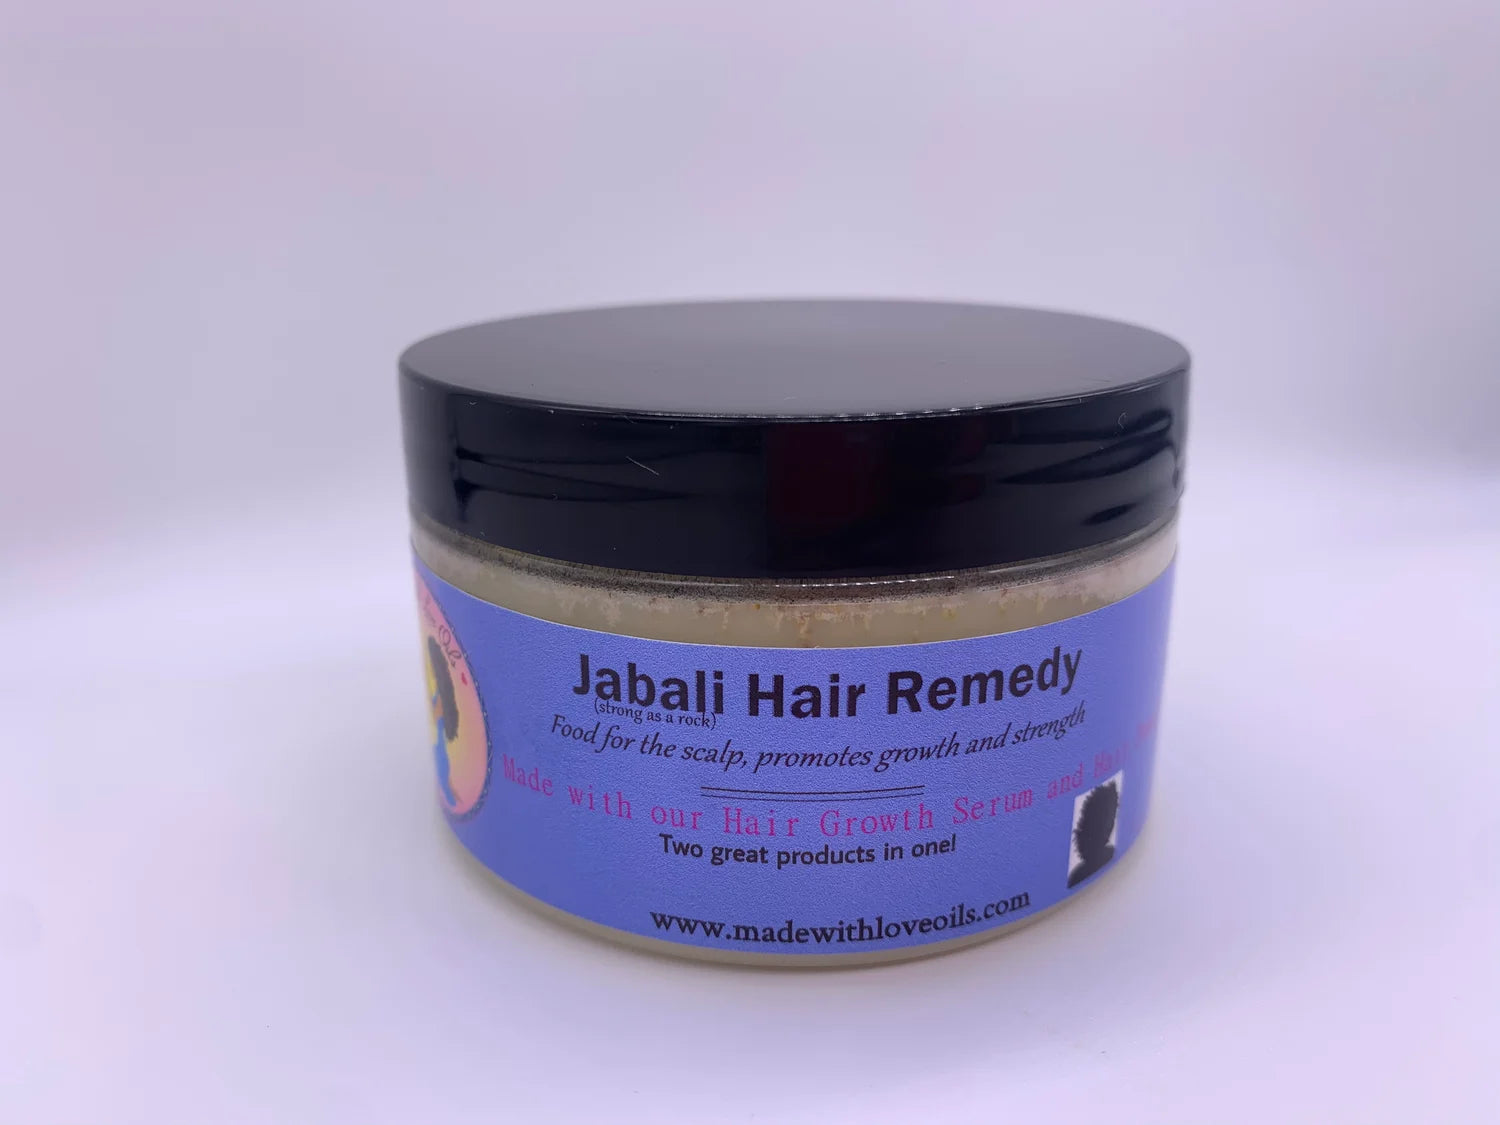 Jabali Hair Remedy